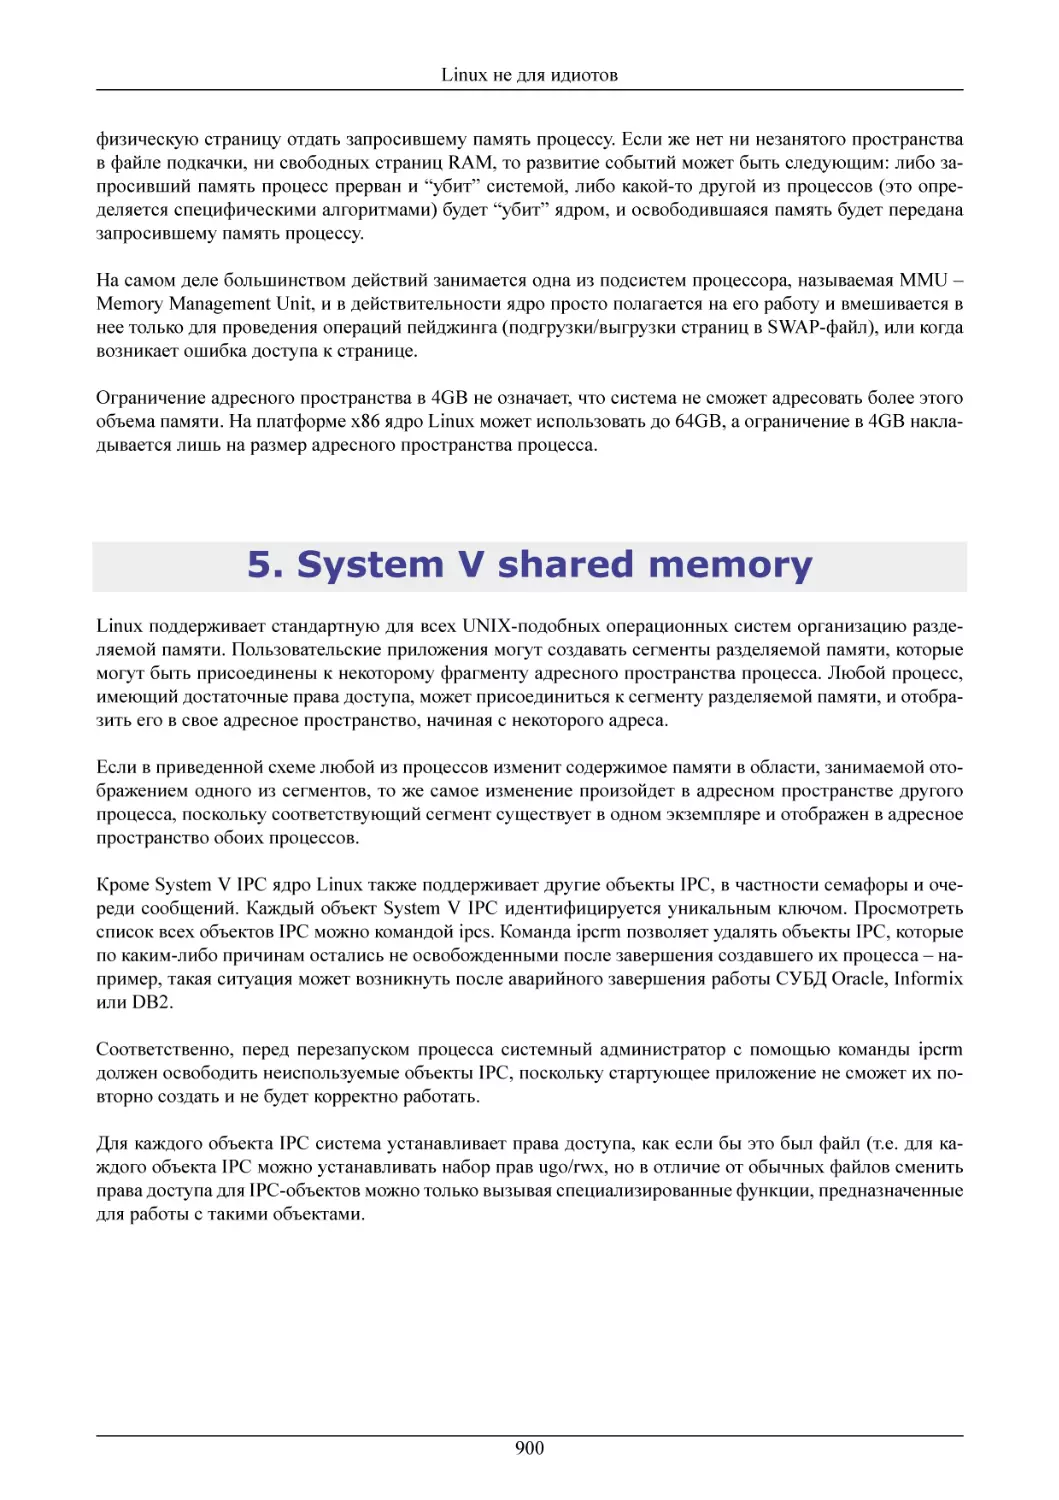 System V shared memory